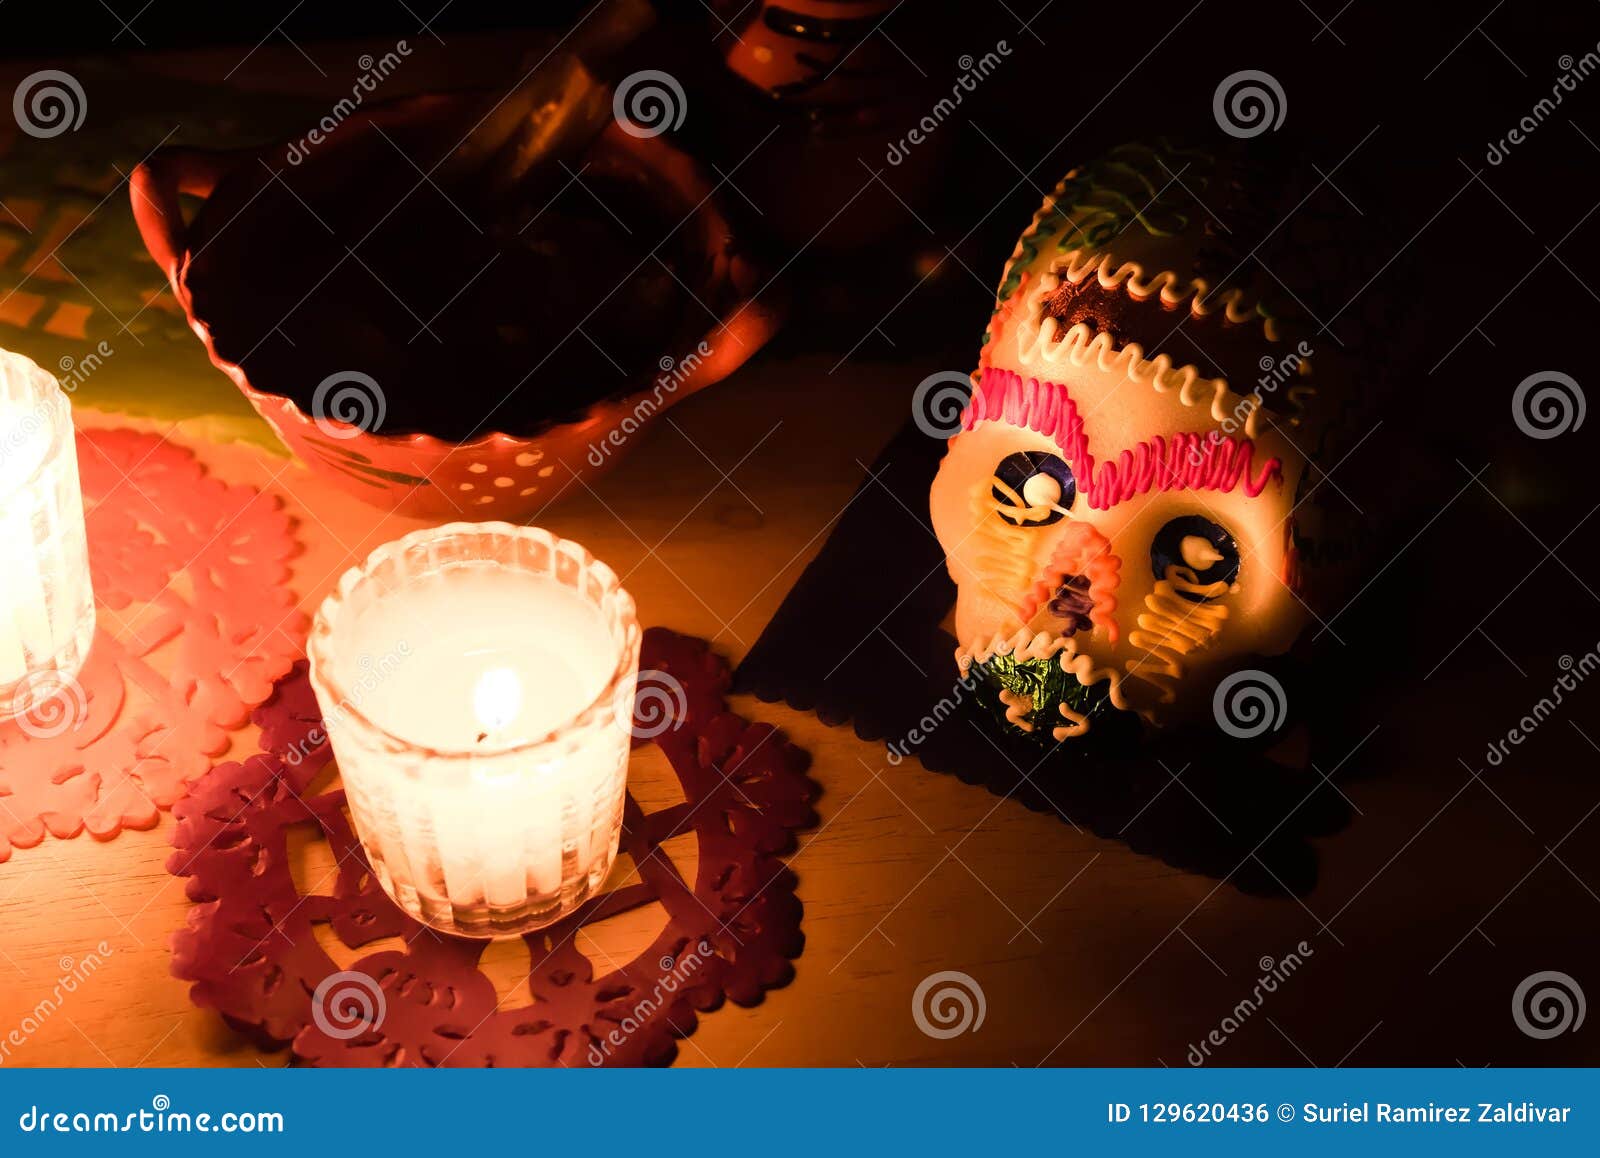 sugar skull and candles - calaverita - ofrenda dia de muertos